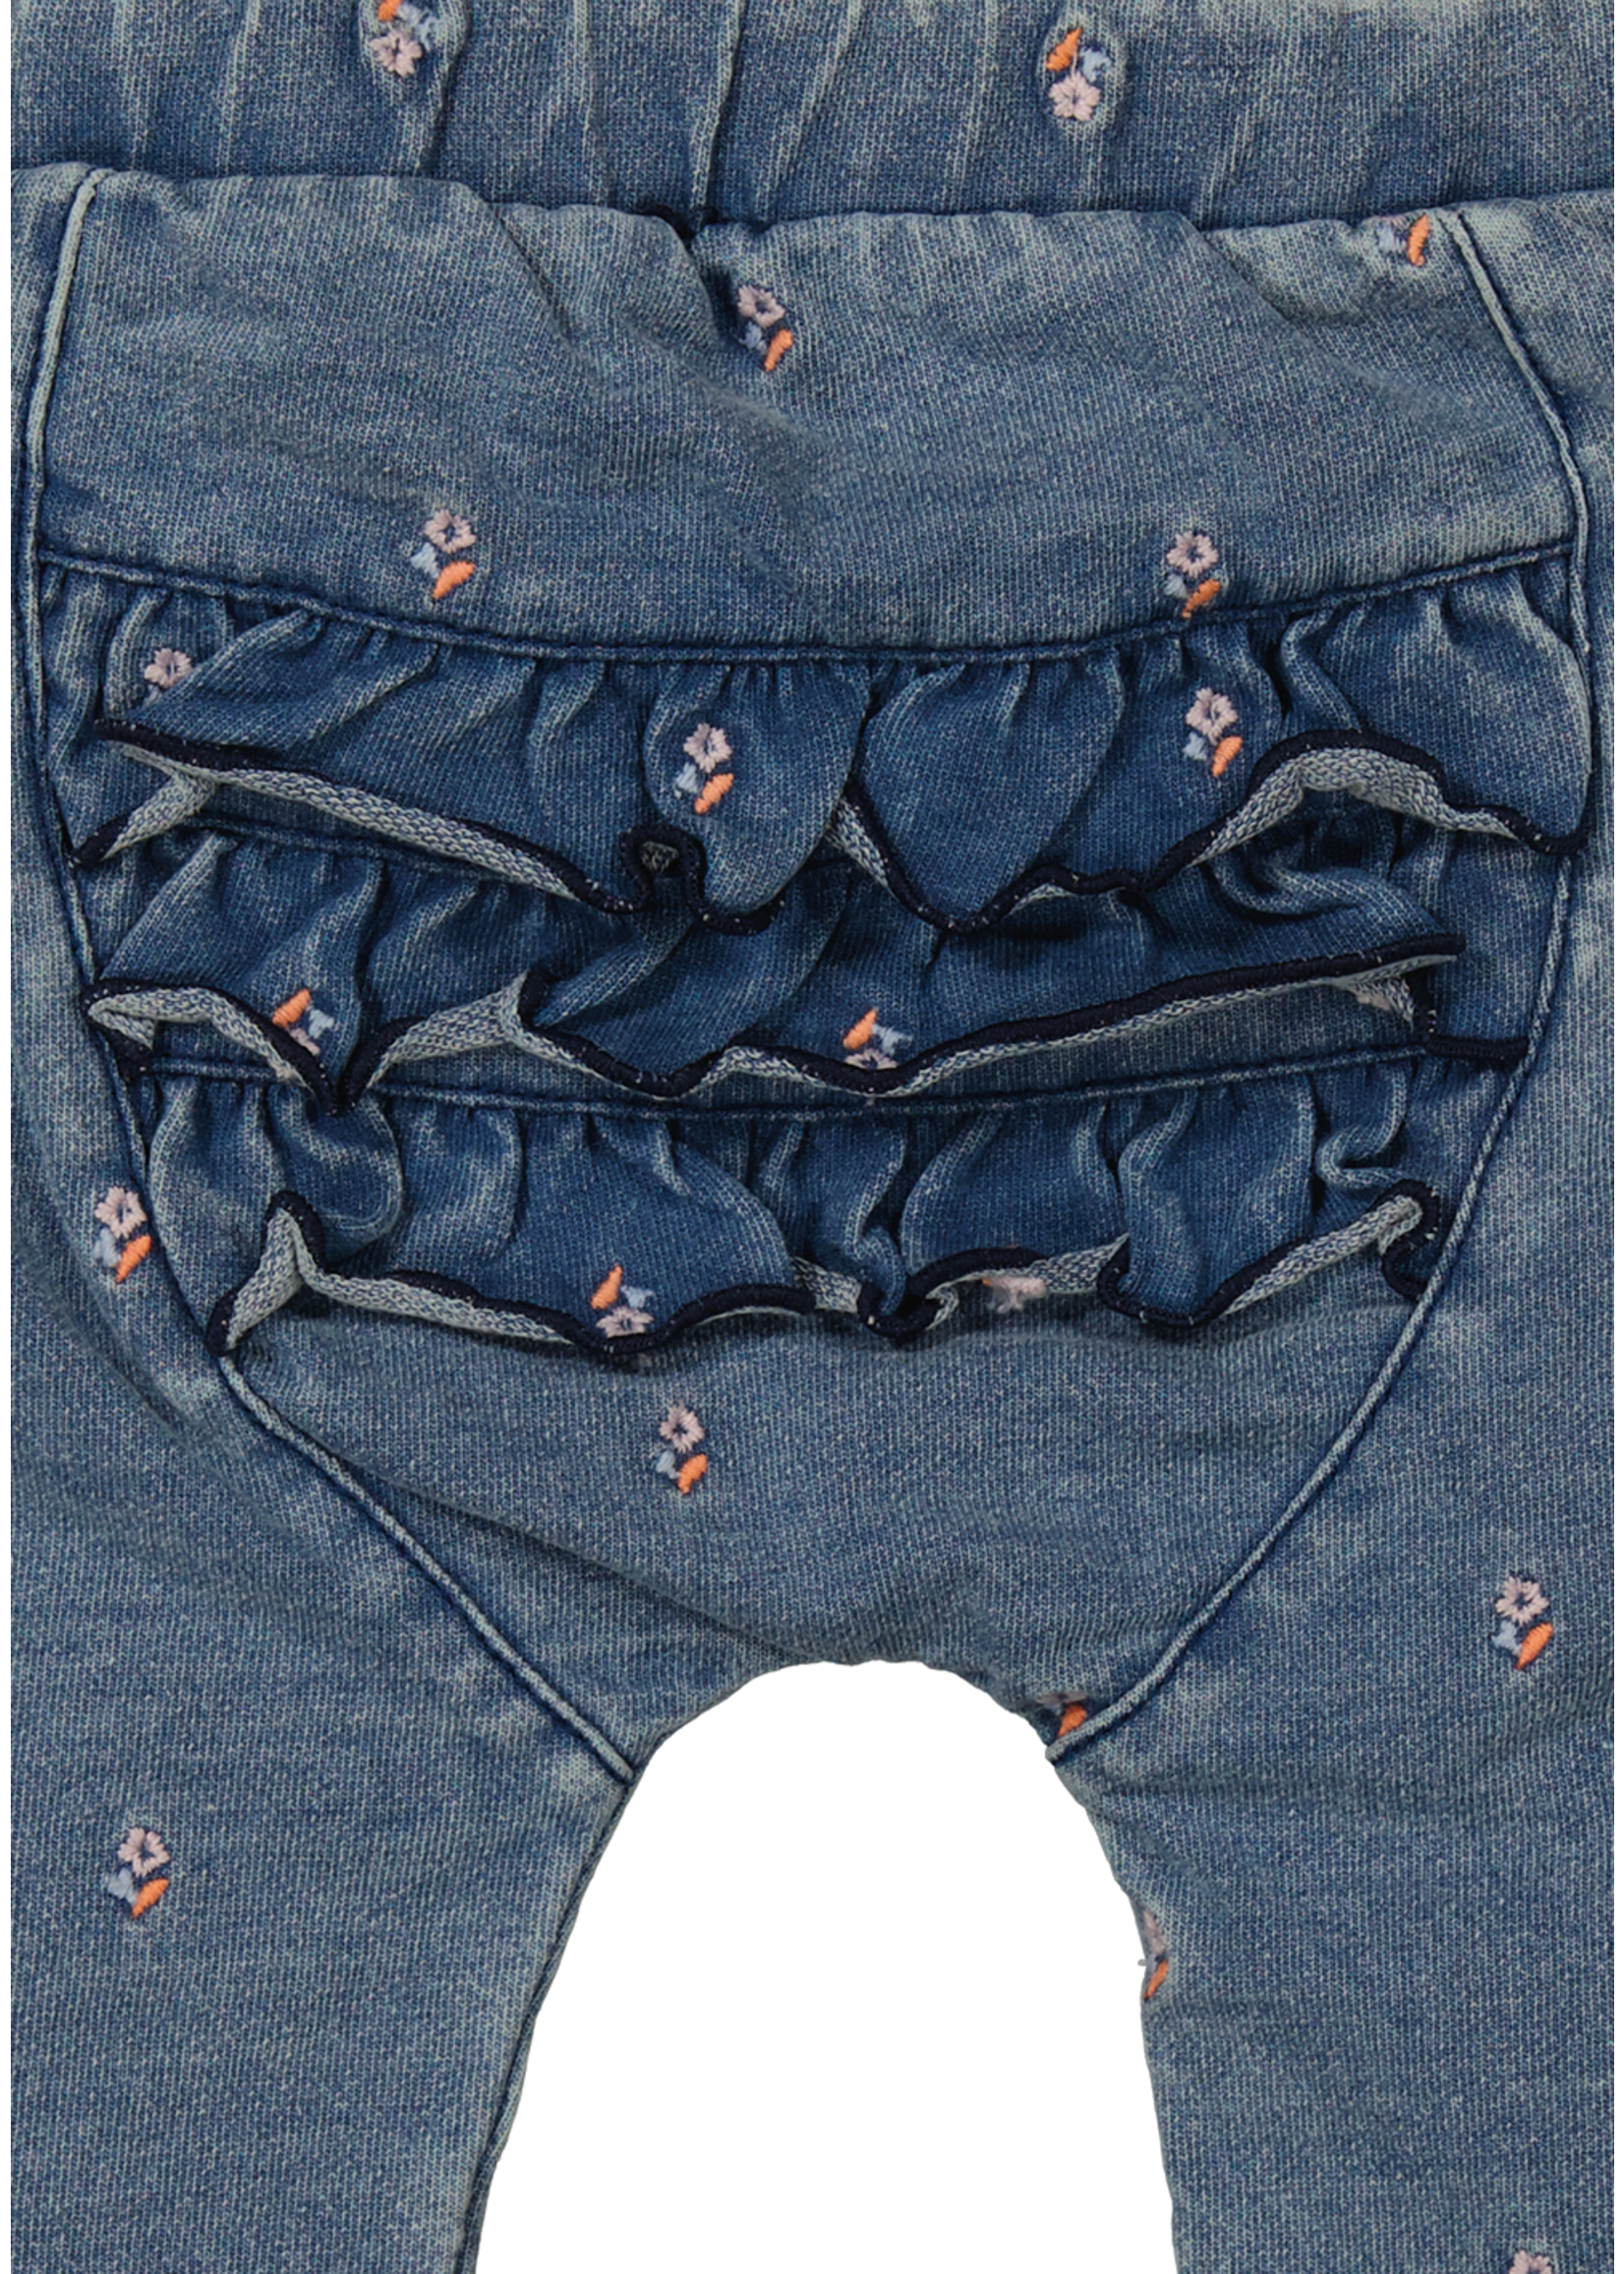 BESS BESS - Pants Denim Embroidery Flower SS24